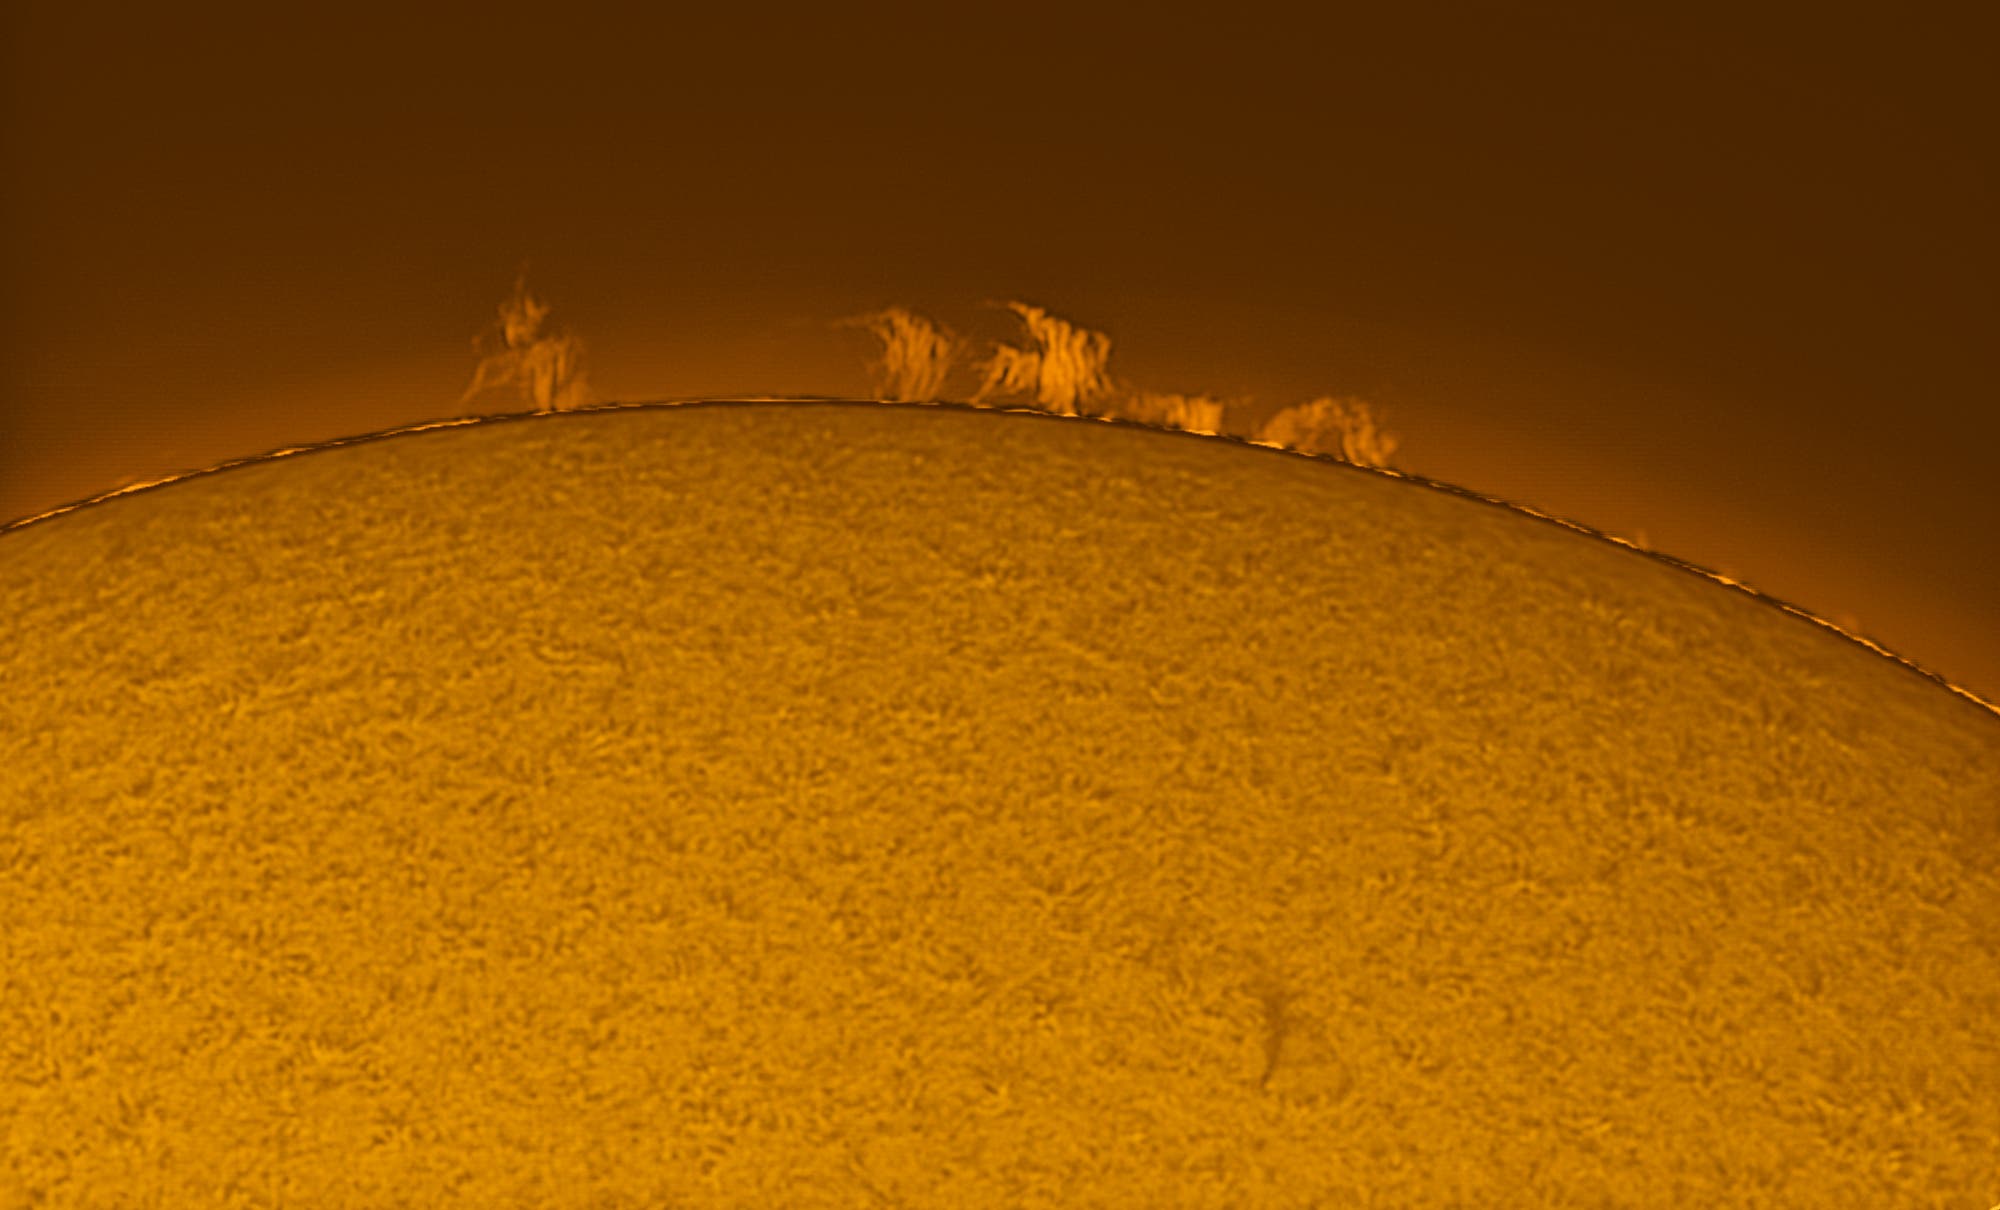 Sonnenprotuberanz am 12. September 2020